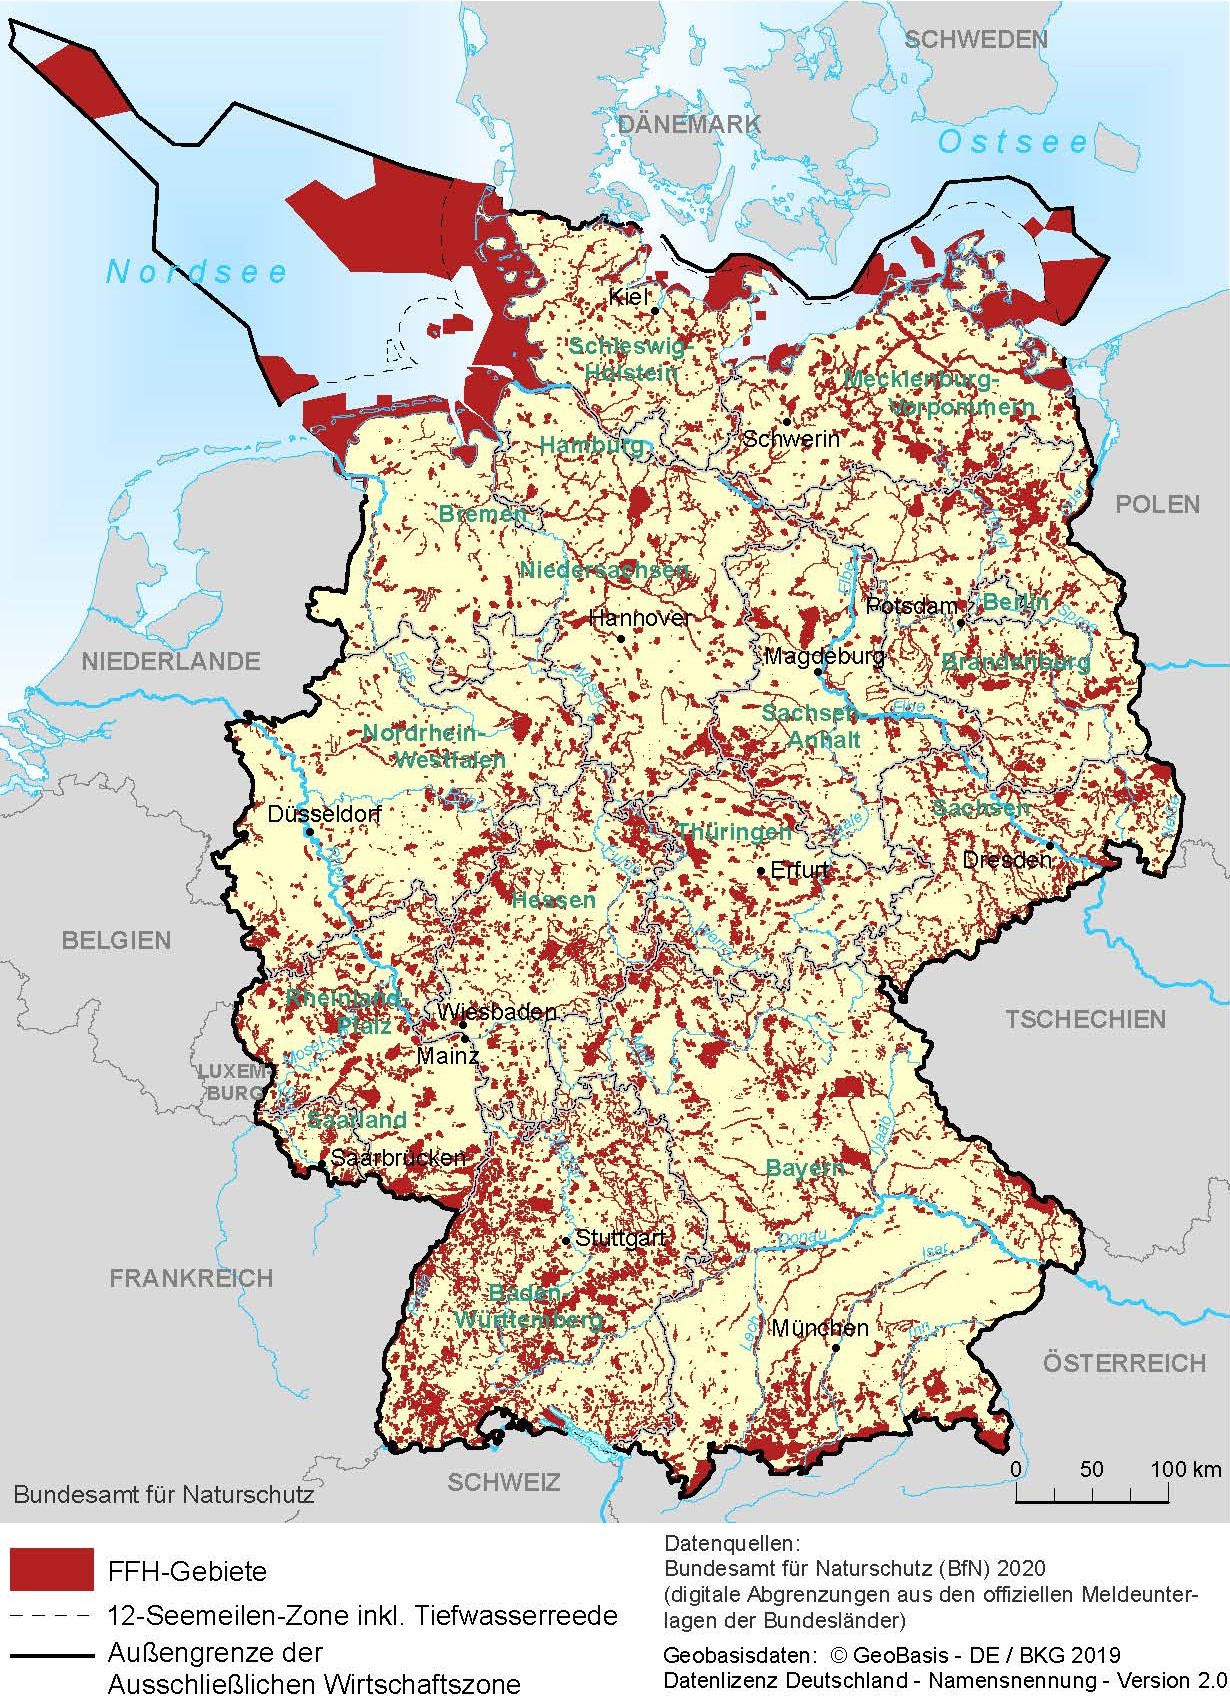 FFH-Gebiete in Deutschland